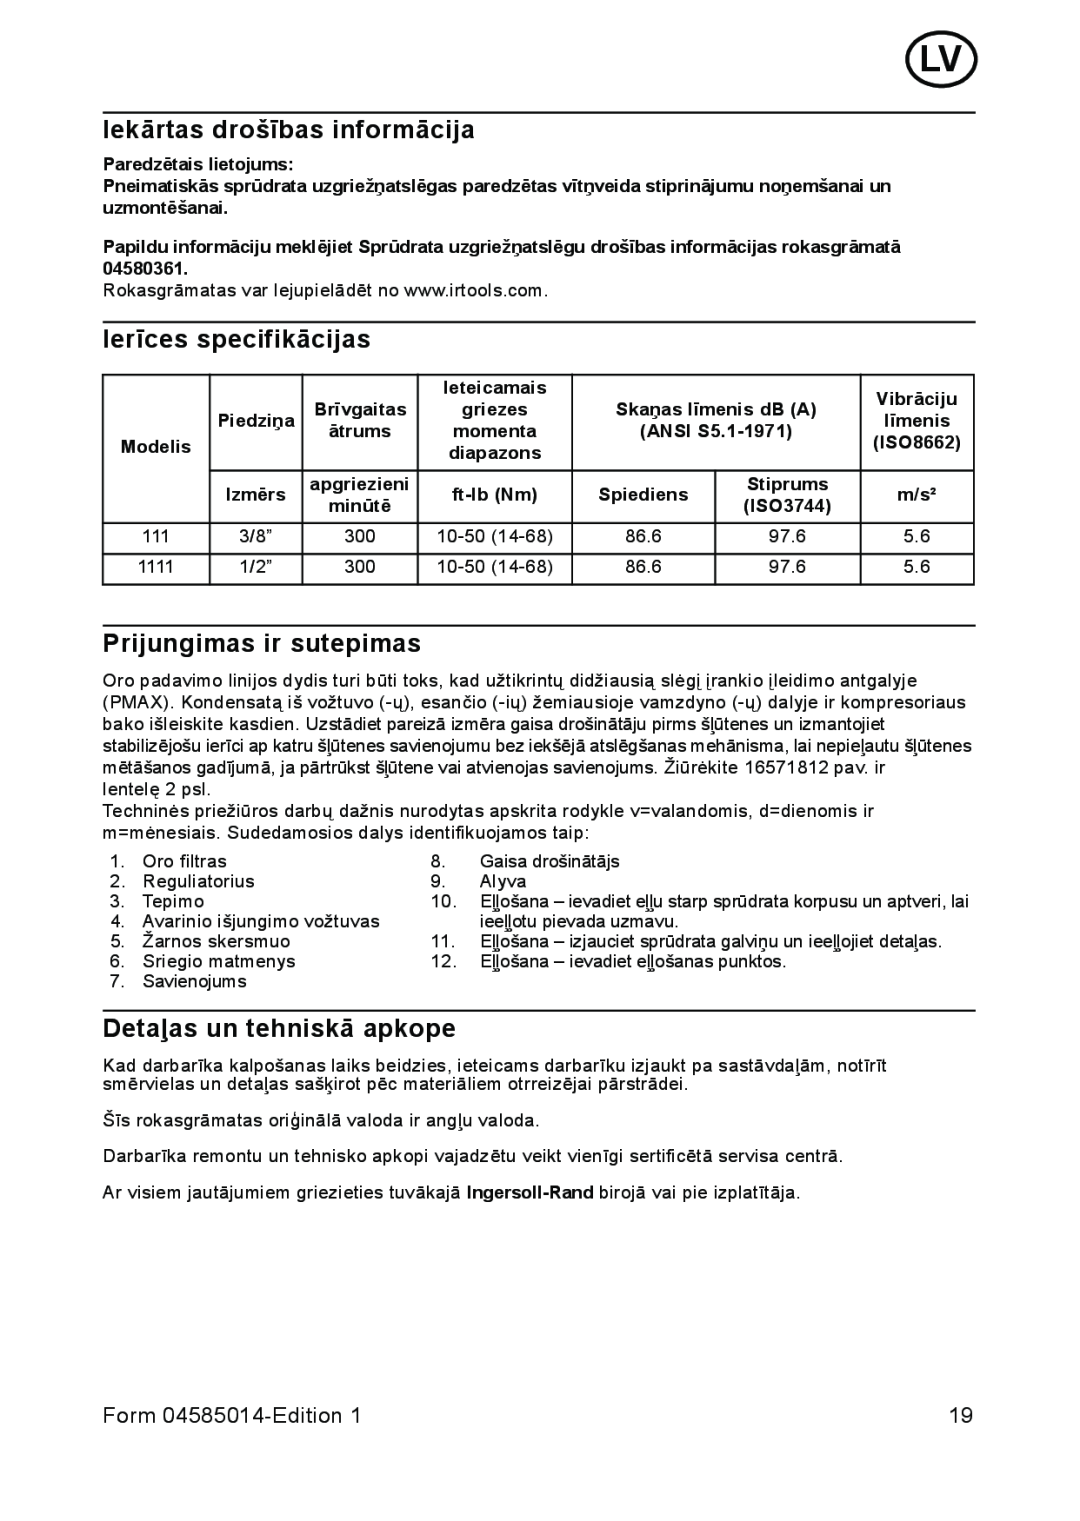 Ingersoll-Rand 111 Iekārtas drošības informācija, Ierīces specifikācijas, Prijungimas ir sutepimas, Form 04585014-Edition 